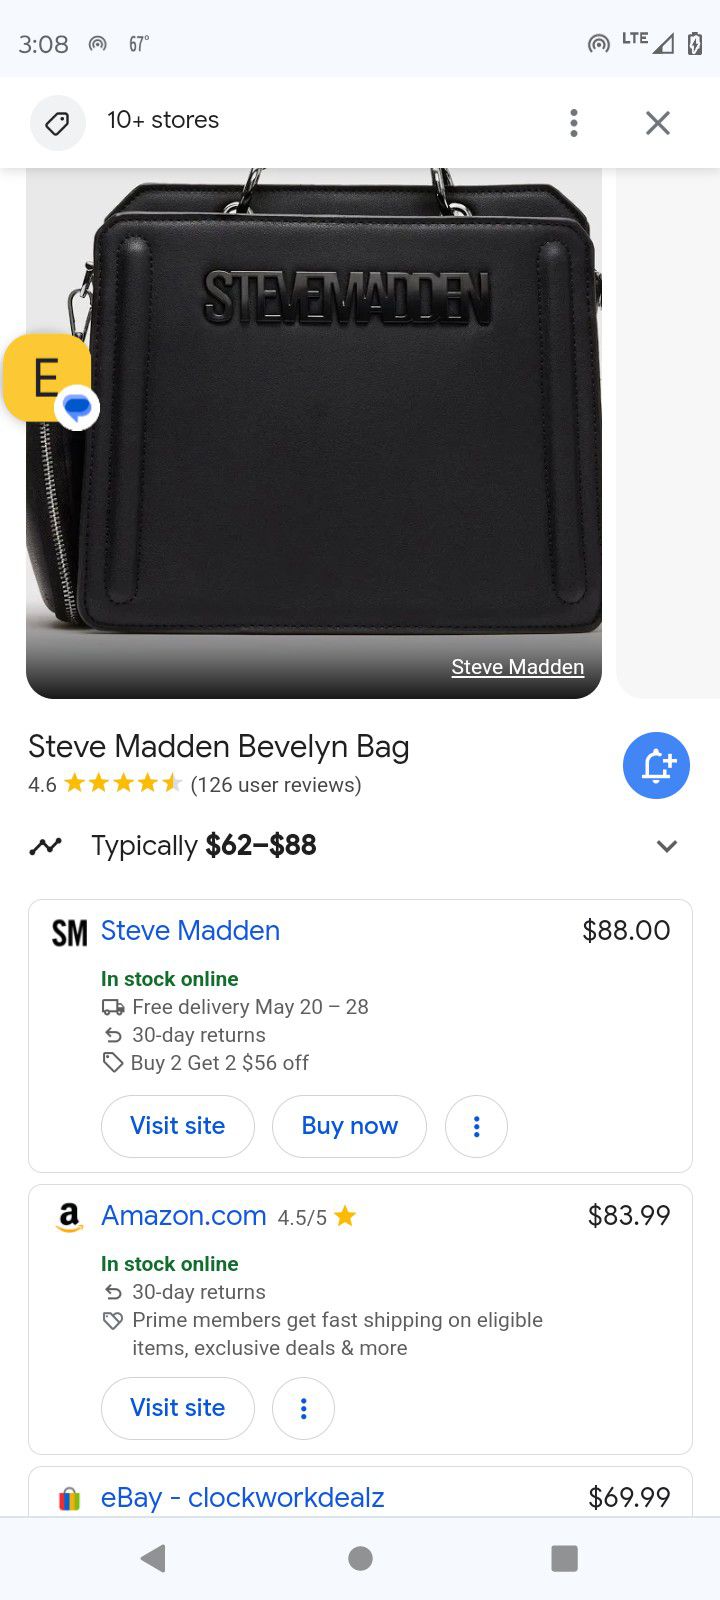 Steve Madden Bevelyn Bag